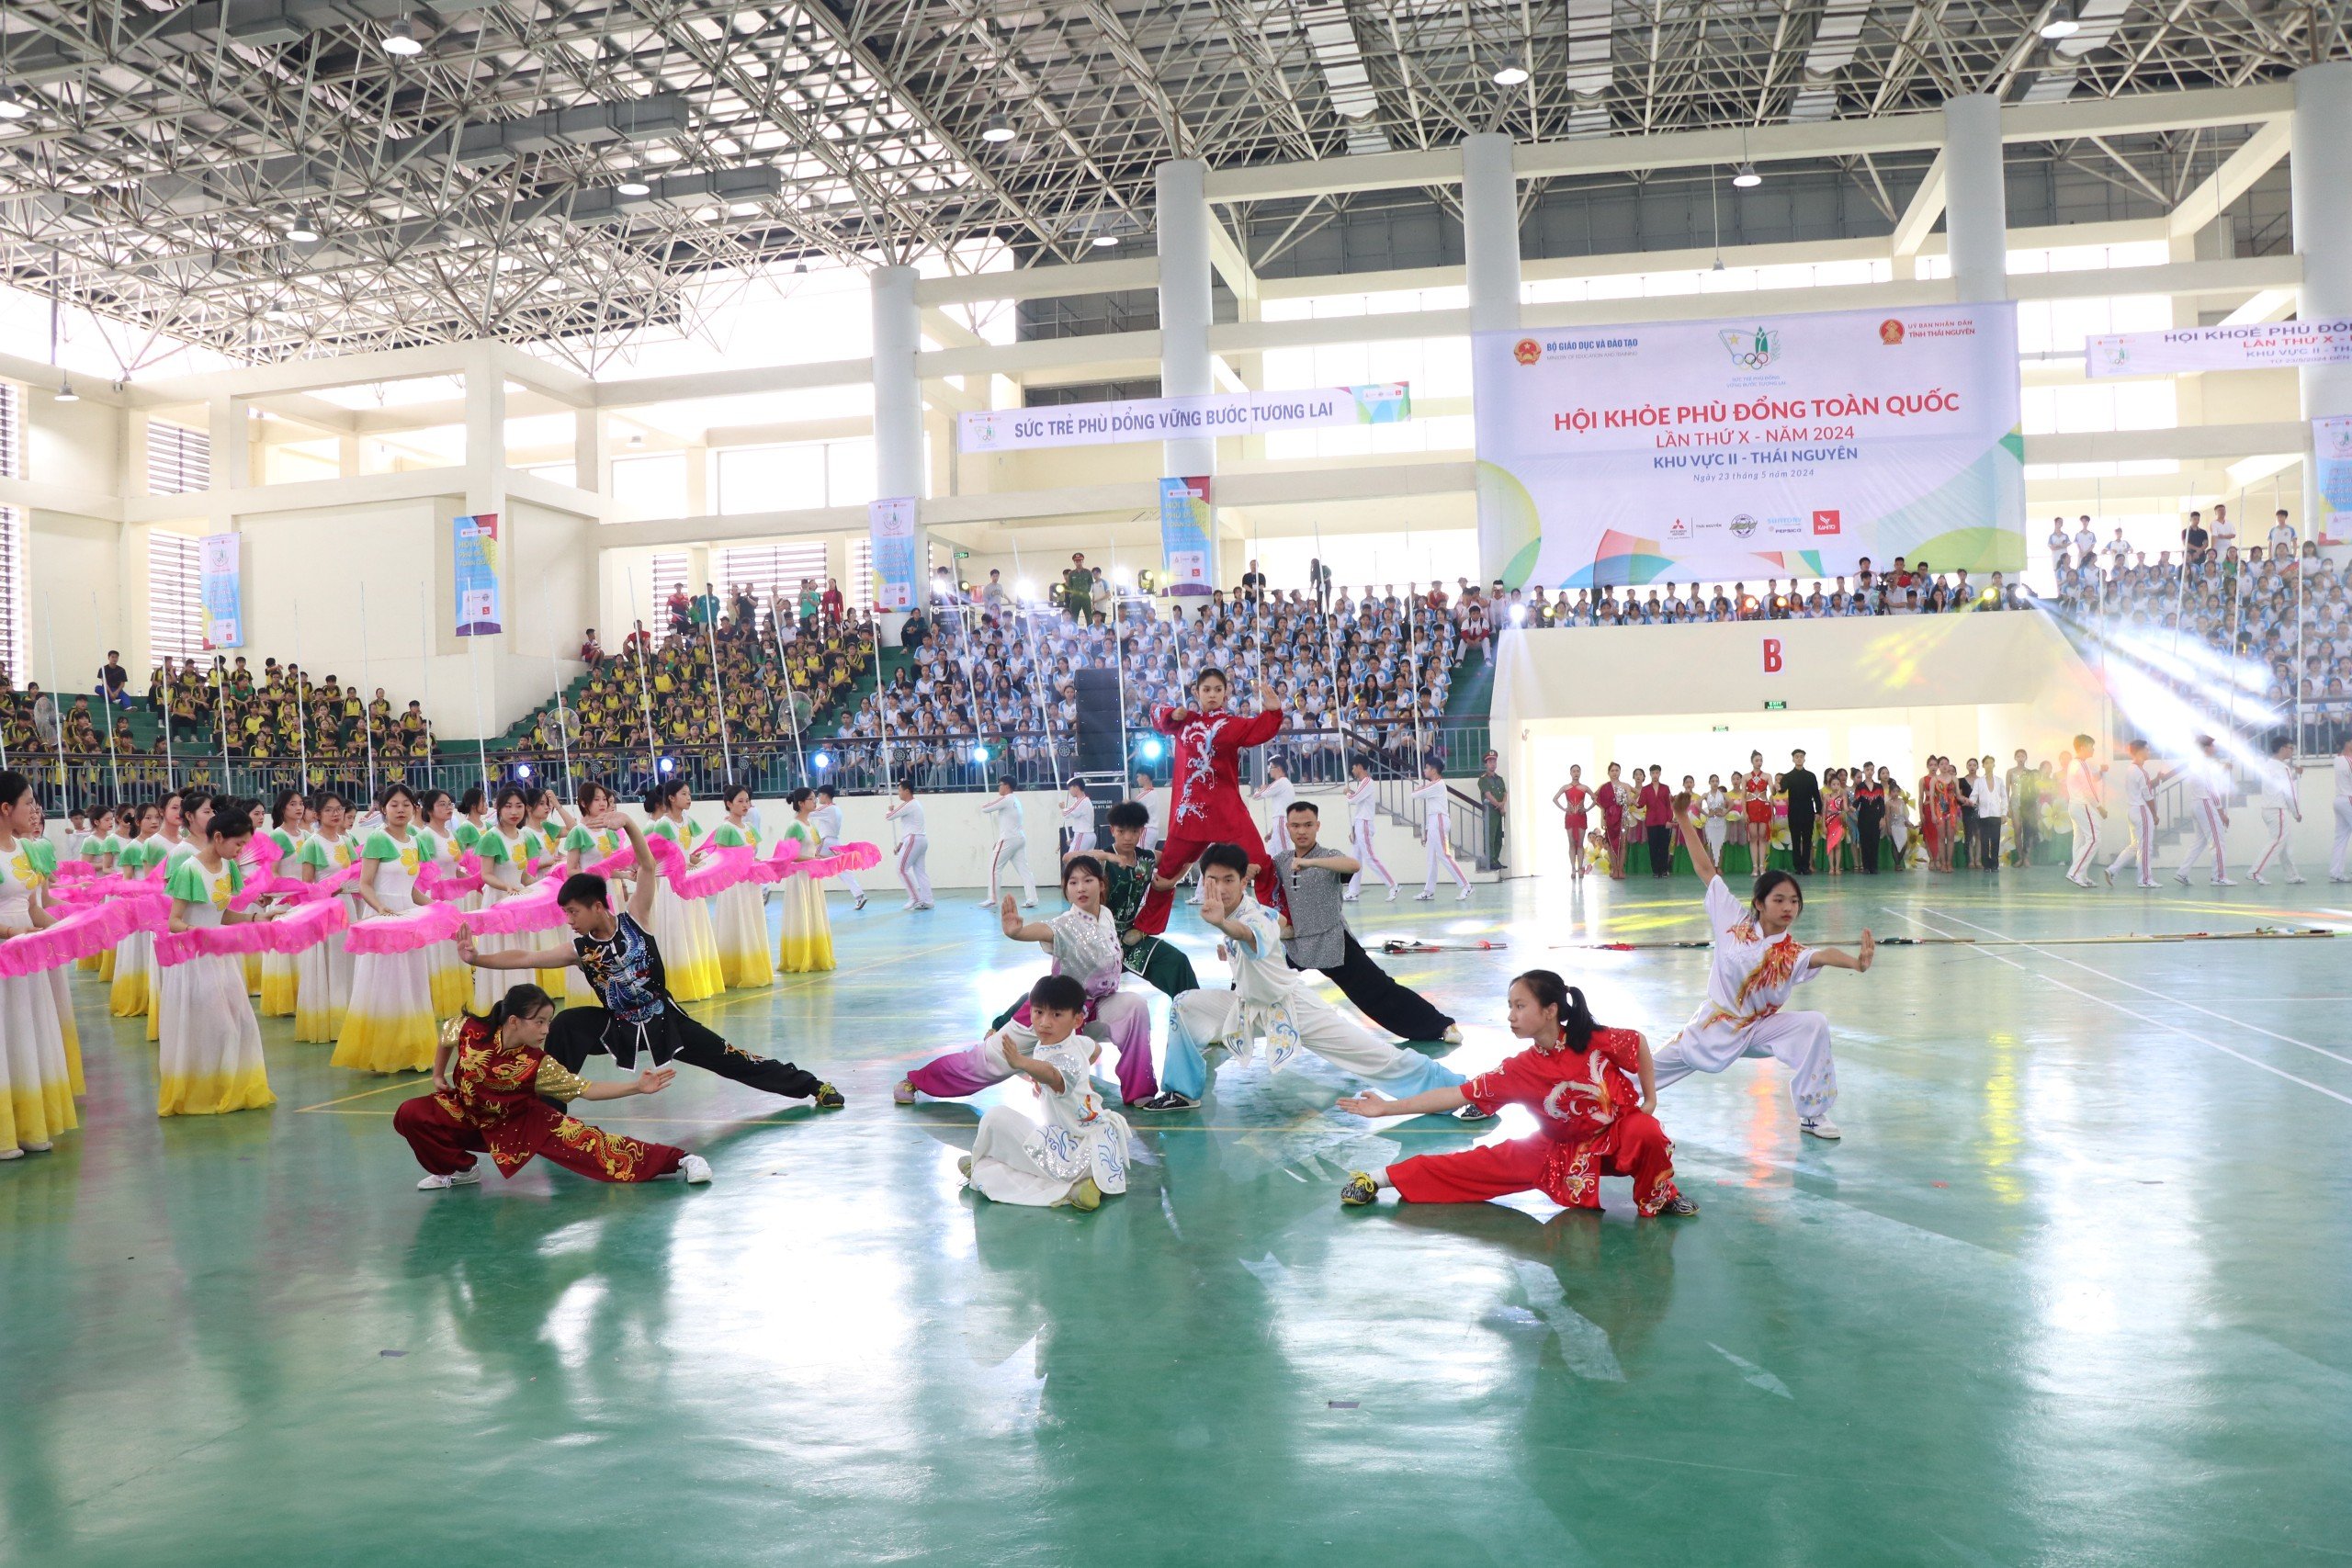 Gần 3.000 vận động viên tham gia Hội khoẻ Phù Đổng toàn quốc tại Thái Nguyên- Ảnh 4.